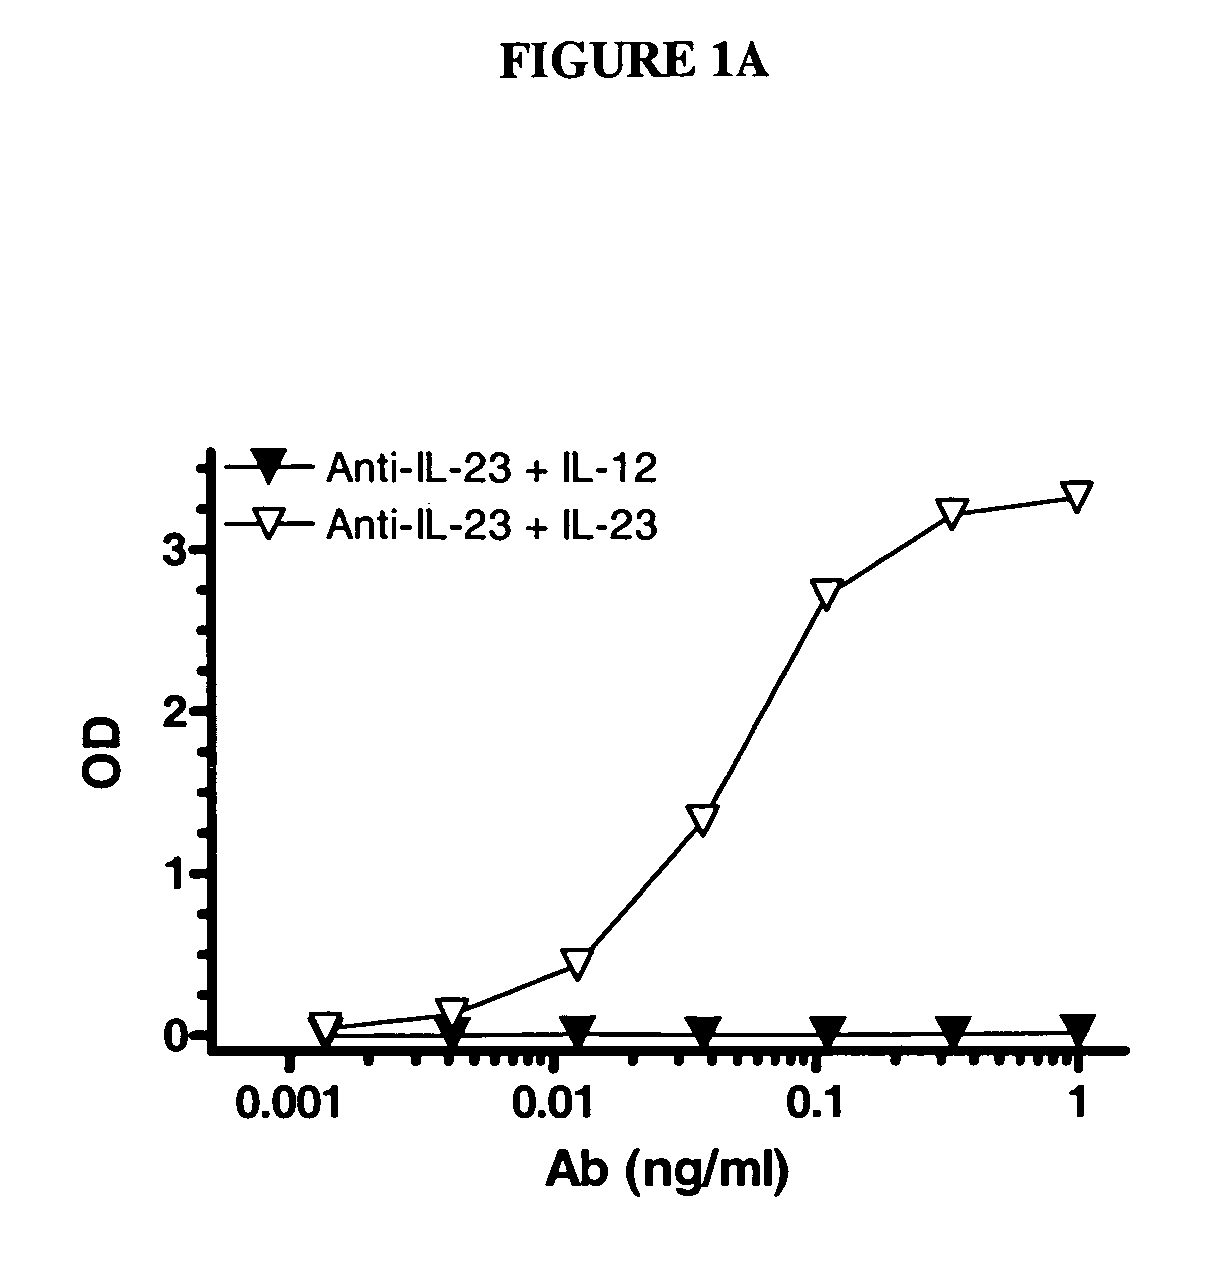 IL-23p40 specific immunoglobulin derived proteins